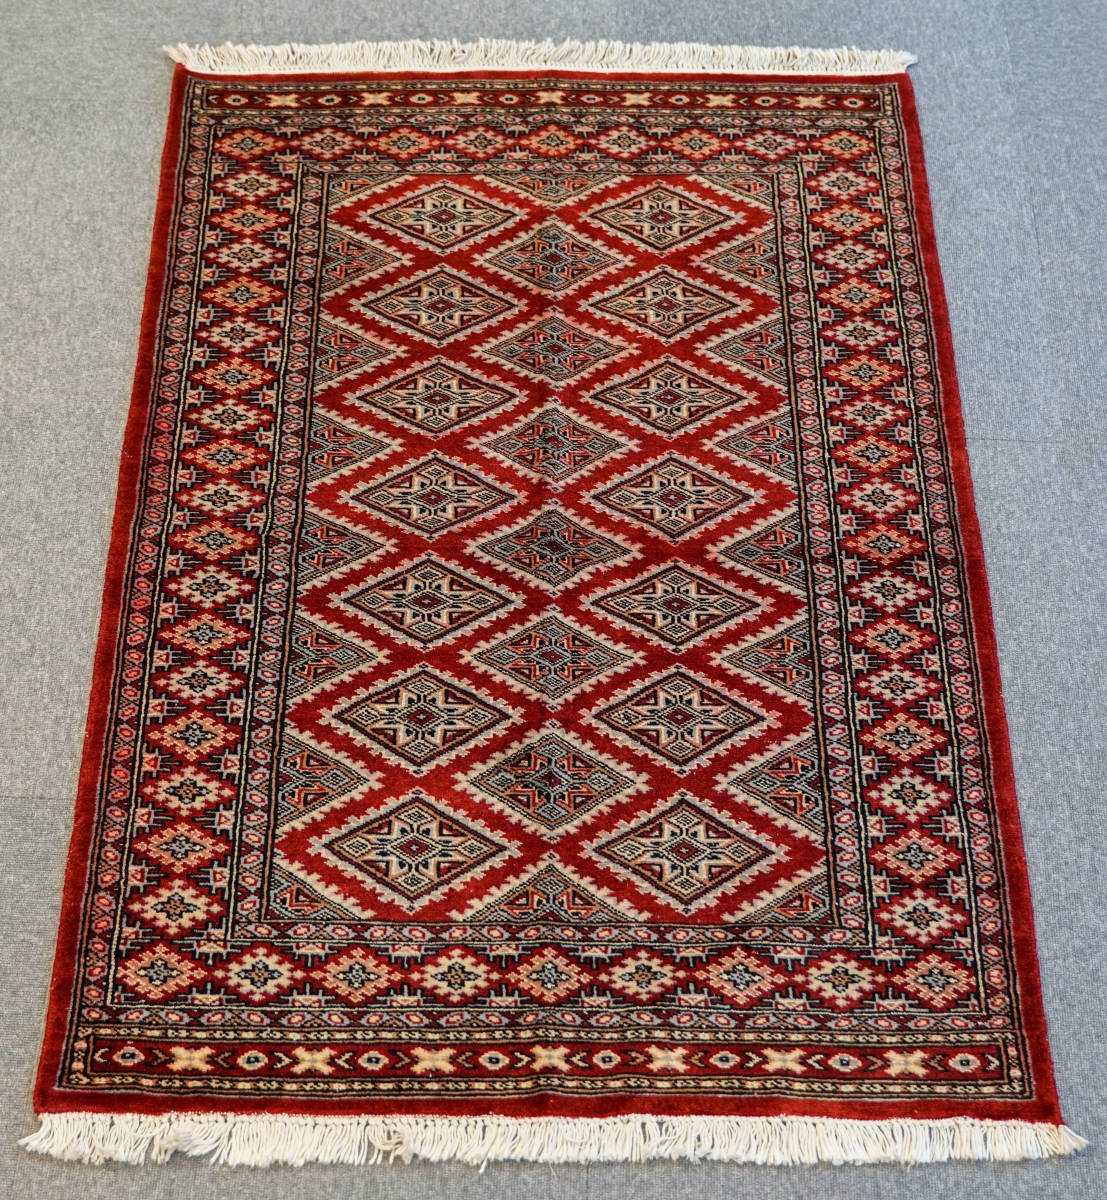 新品 高級ラグ パキスタン 手織り絨毯 国内送料無料 stn:1831 アクセントラグ 140x92cm 超人気高品質